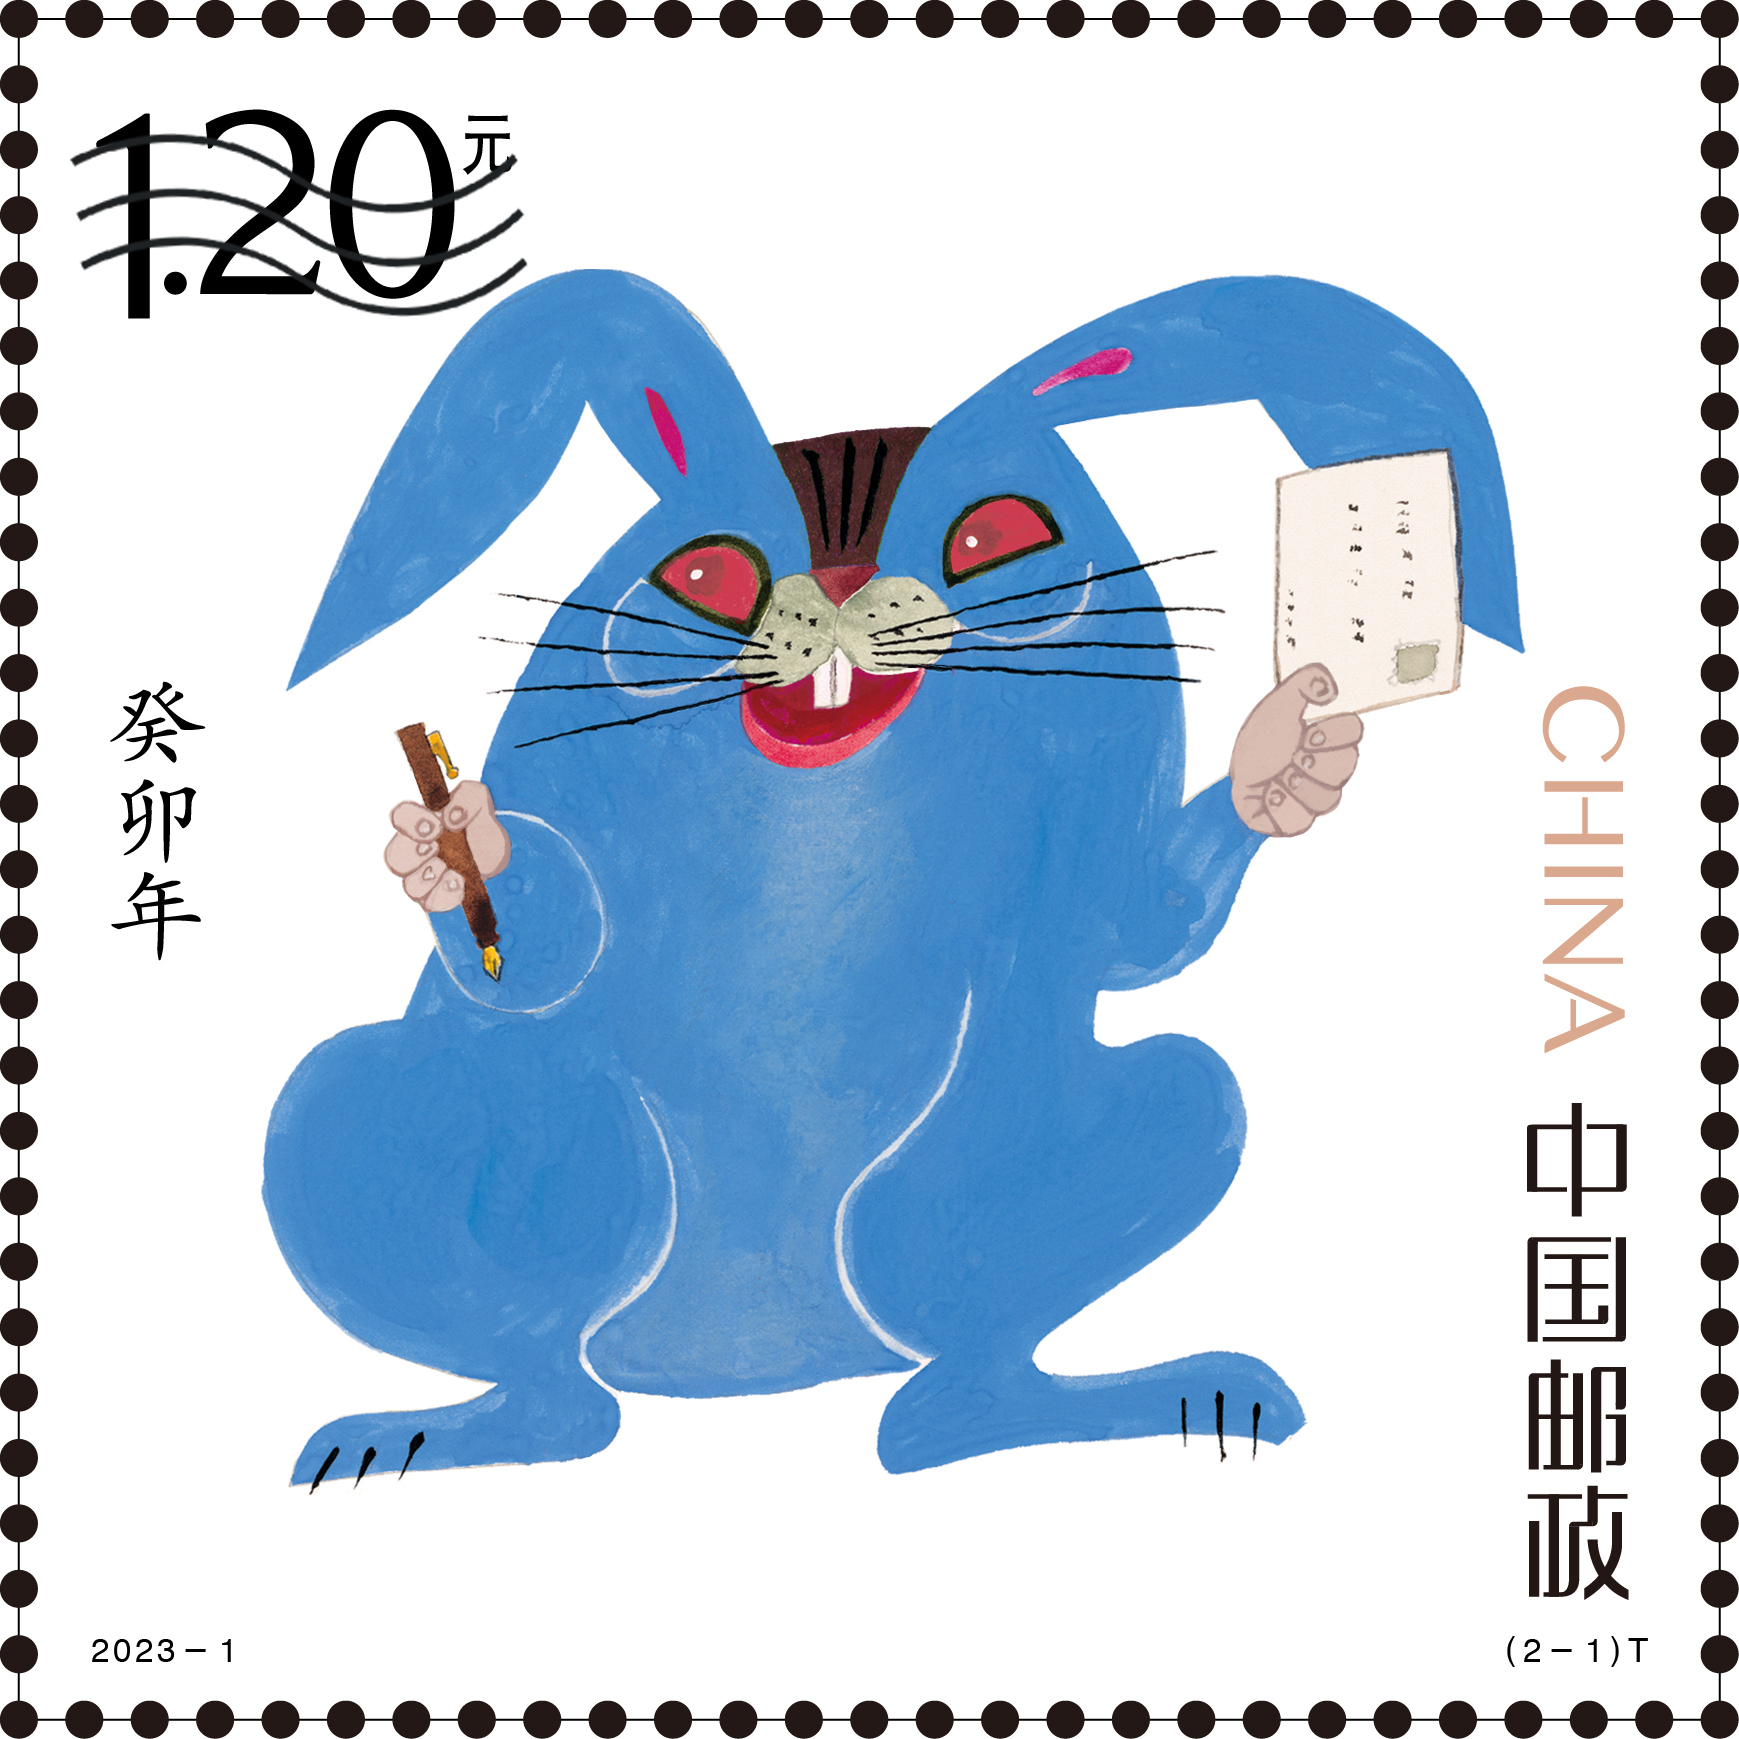 《癸卯年》特种邮票图稿正式发布